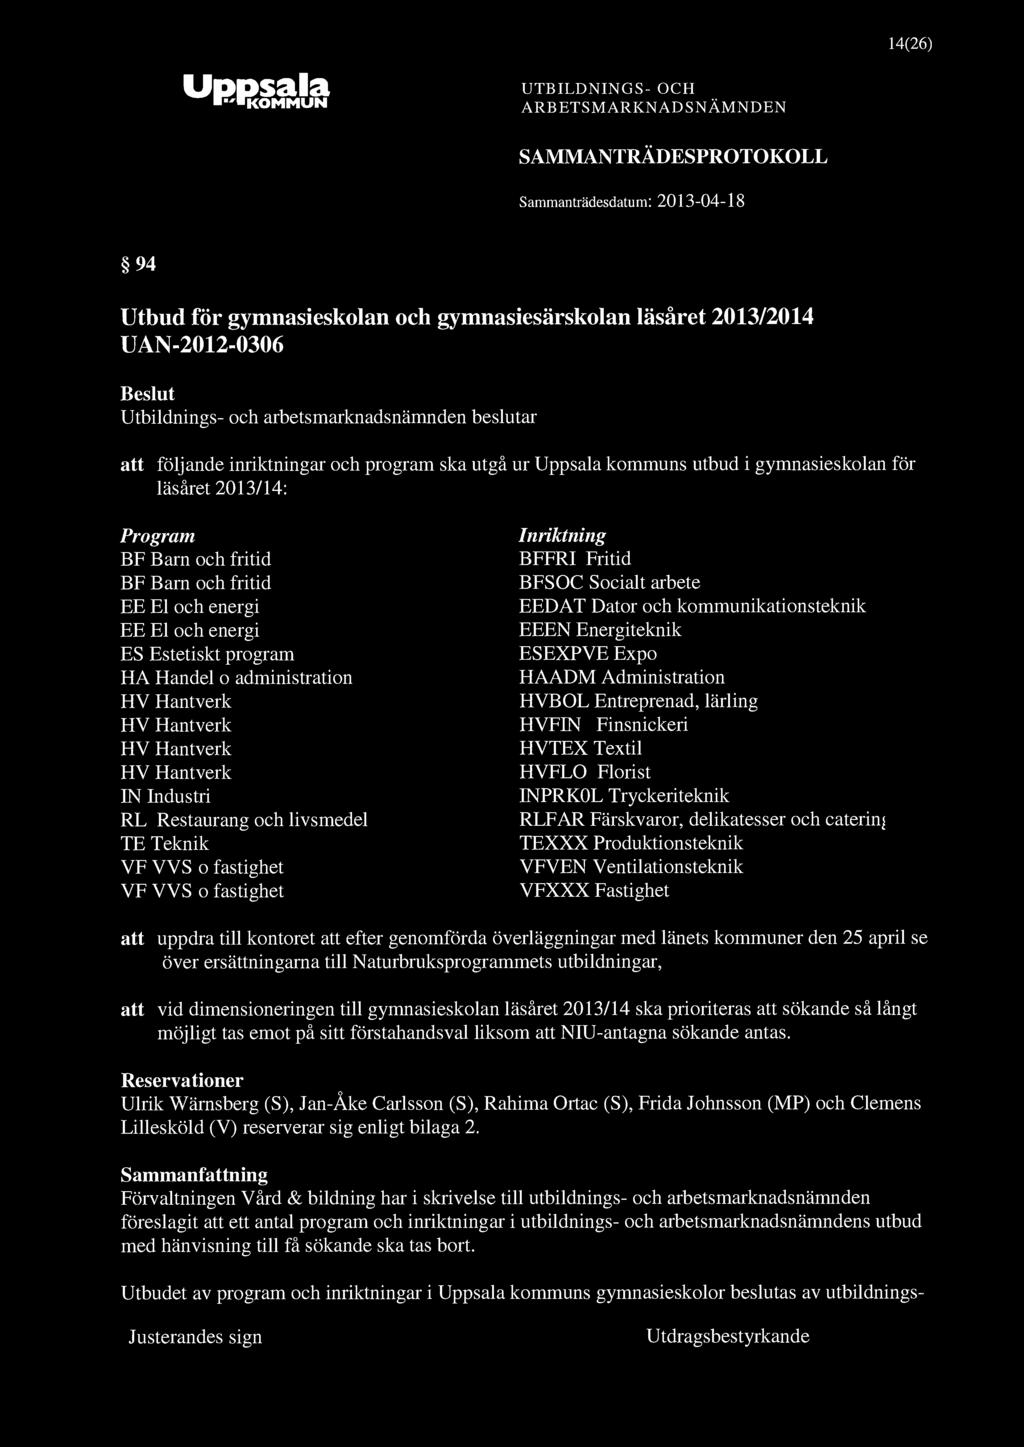 14(26) Uppsala 94 Utbud för gymnasieskolan och gymnasiesärskolan läsåret 2013/2014 UAN-2012-0306 att följande inriktningar och program ska utgå ur Uppsala kommuns utbud i gymnasieskolan för läsåret